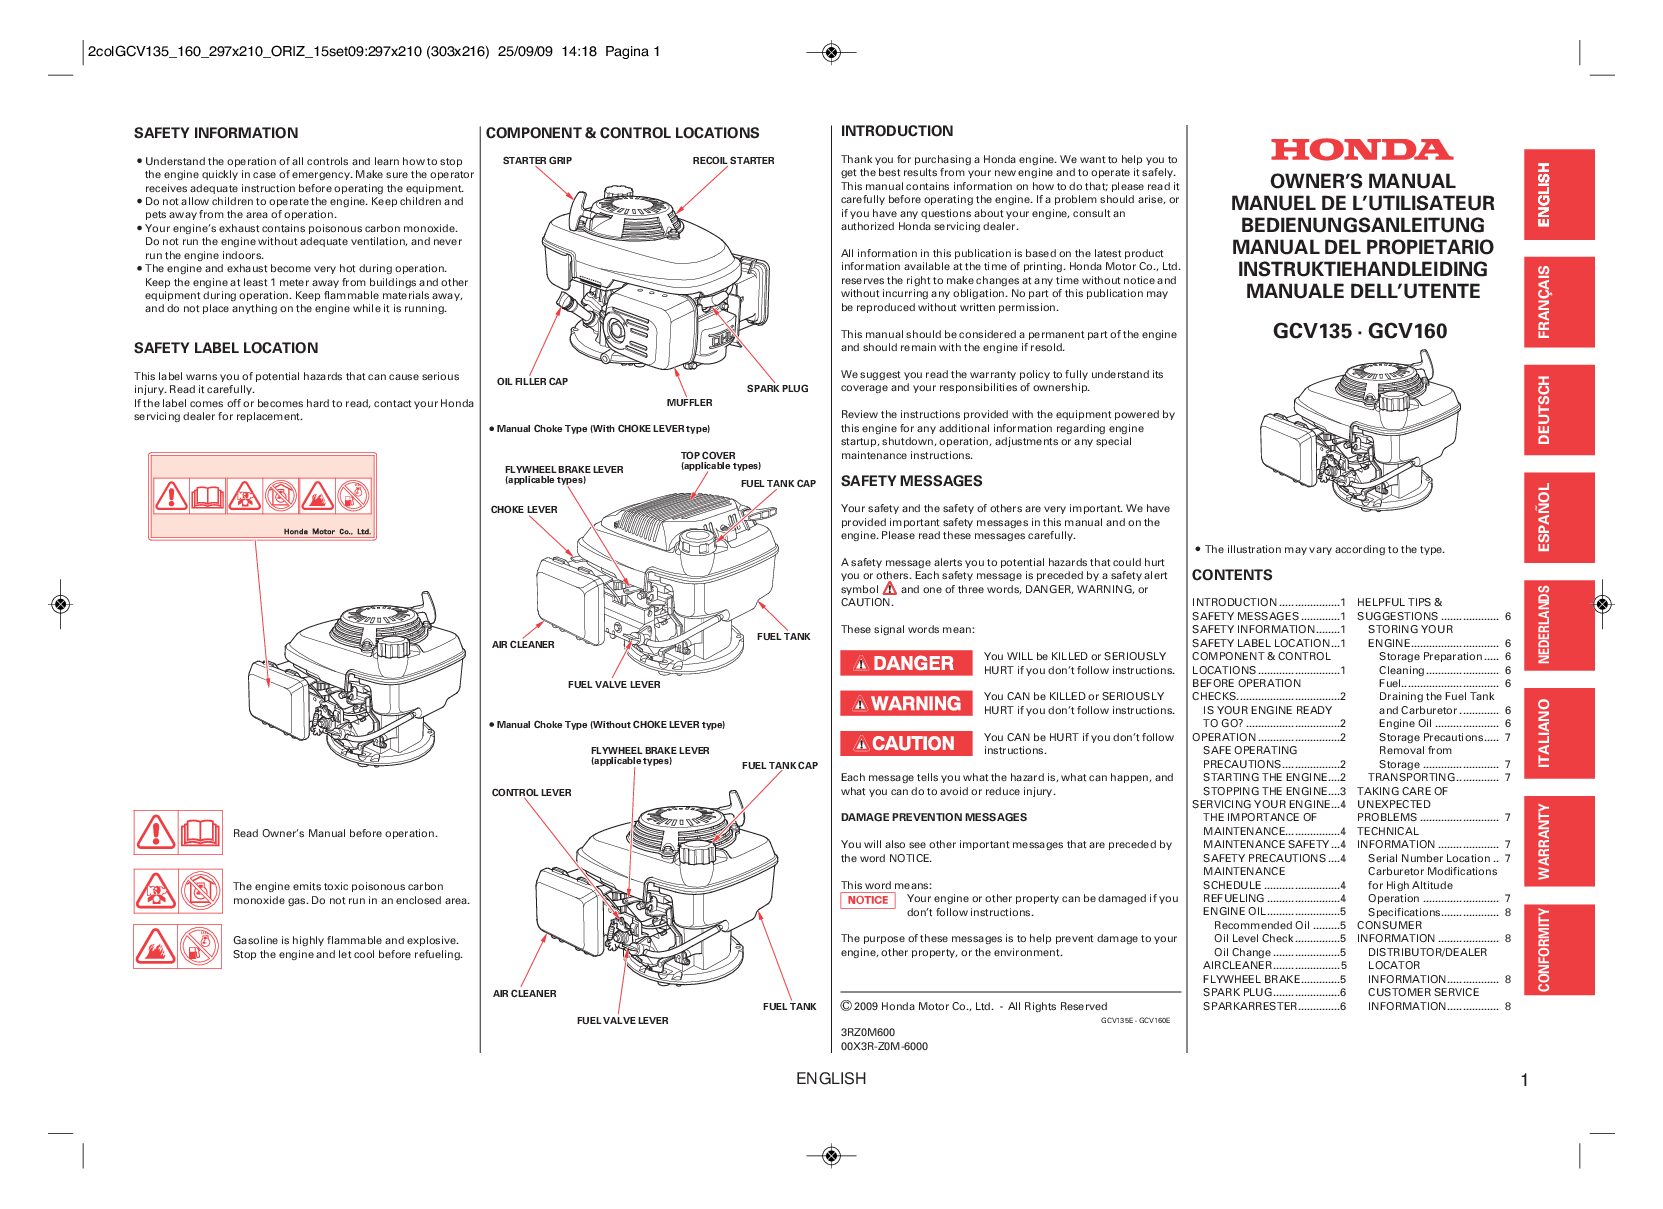 Honda Engines GCV160 Bedienungsanleitung